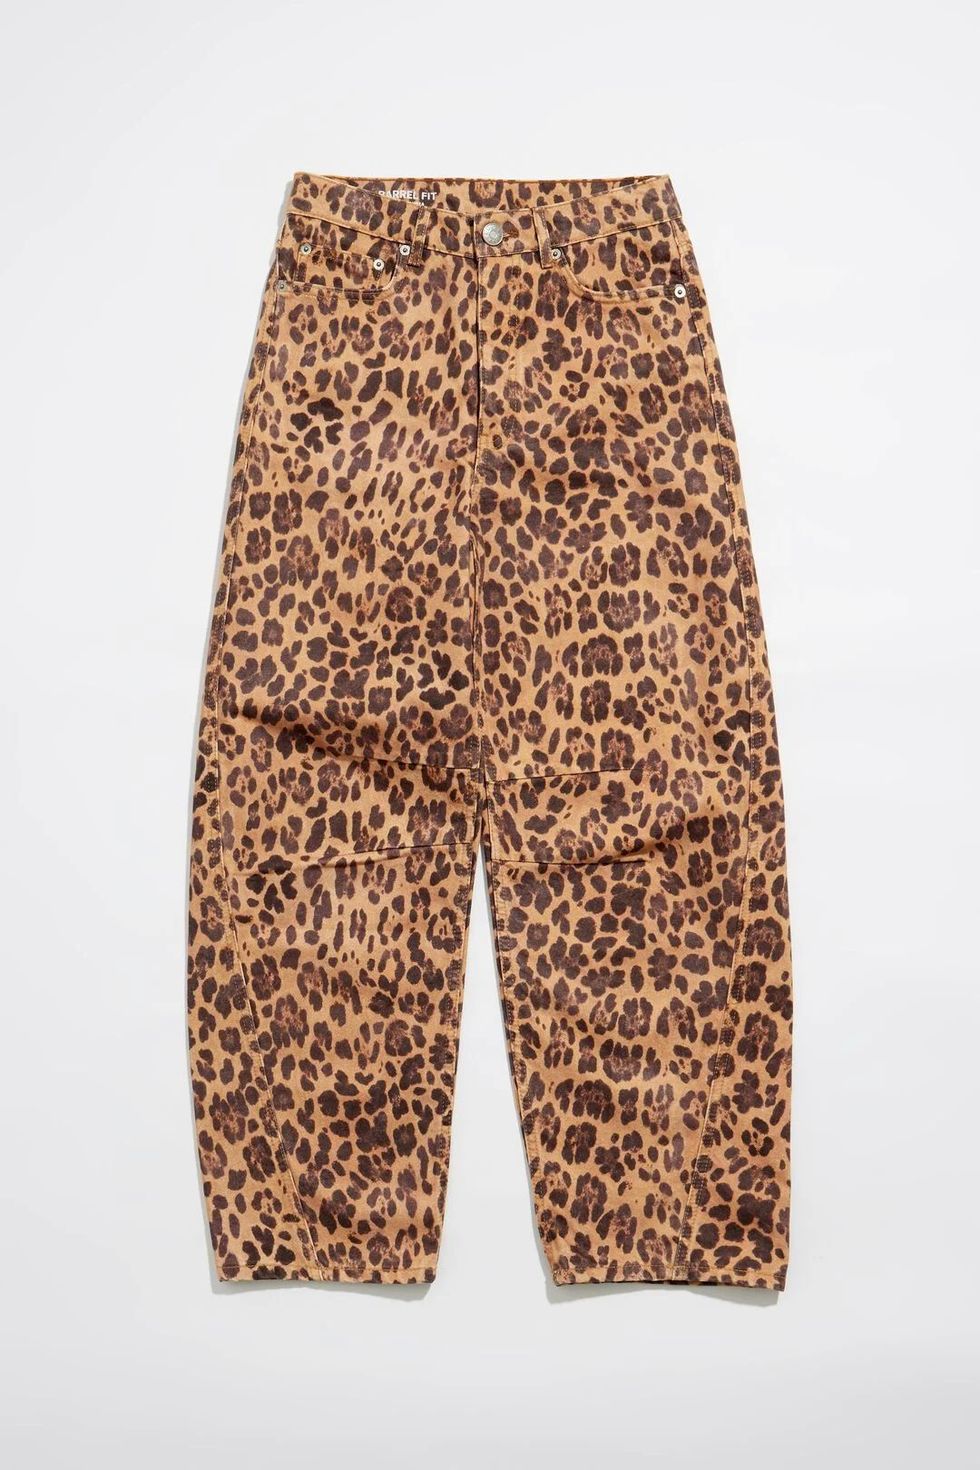 El pantalón de leopardo es el favorito de las estilistas para este